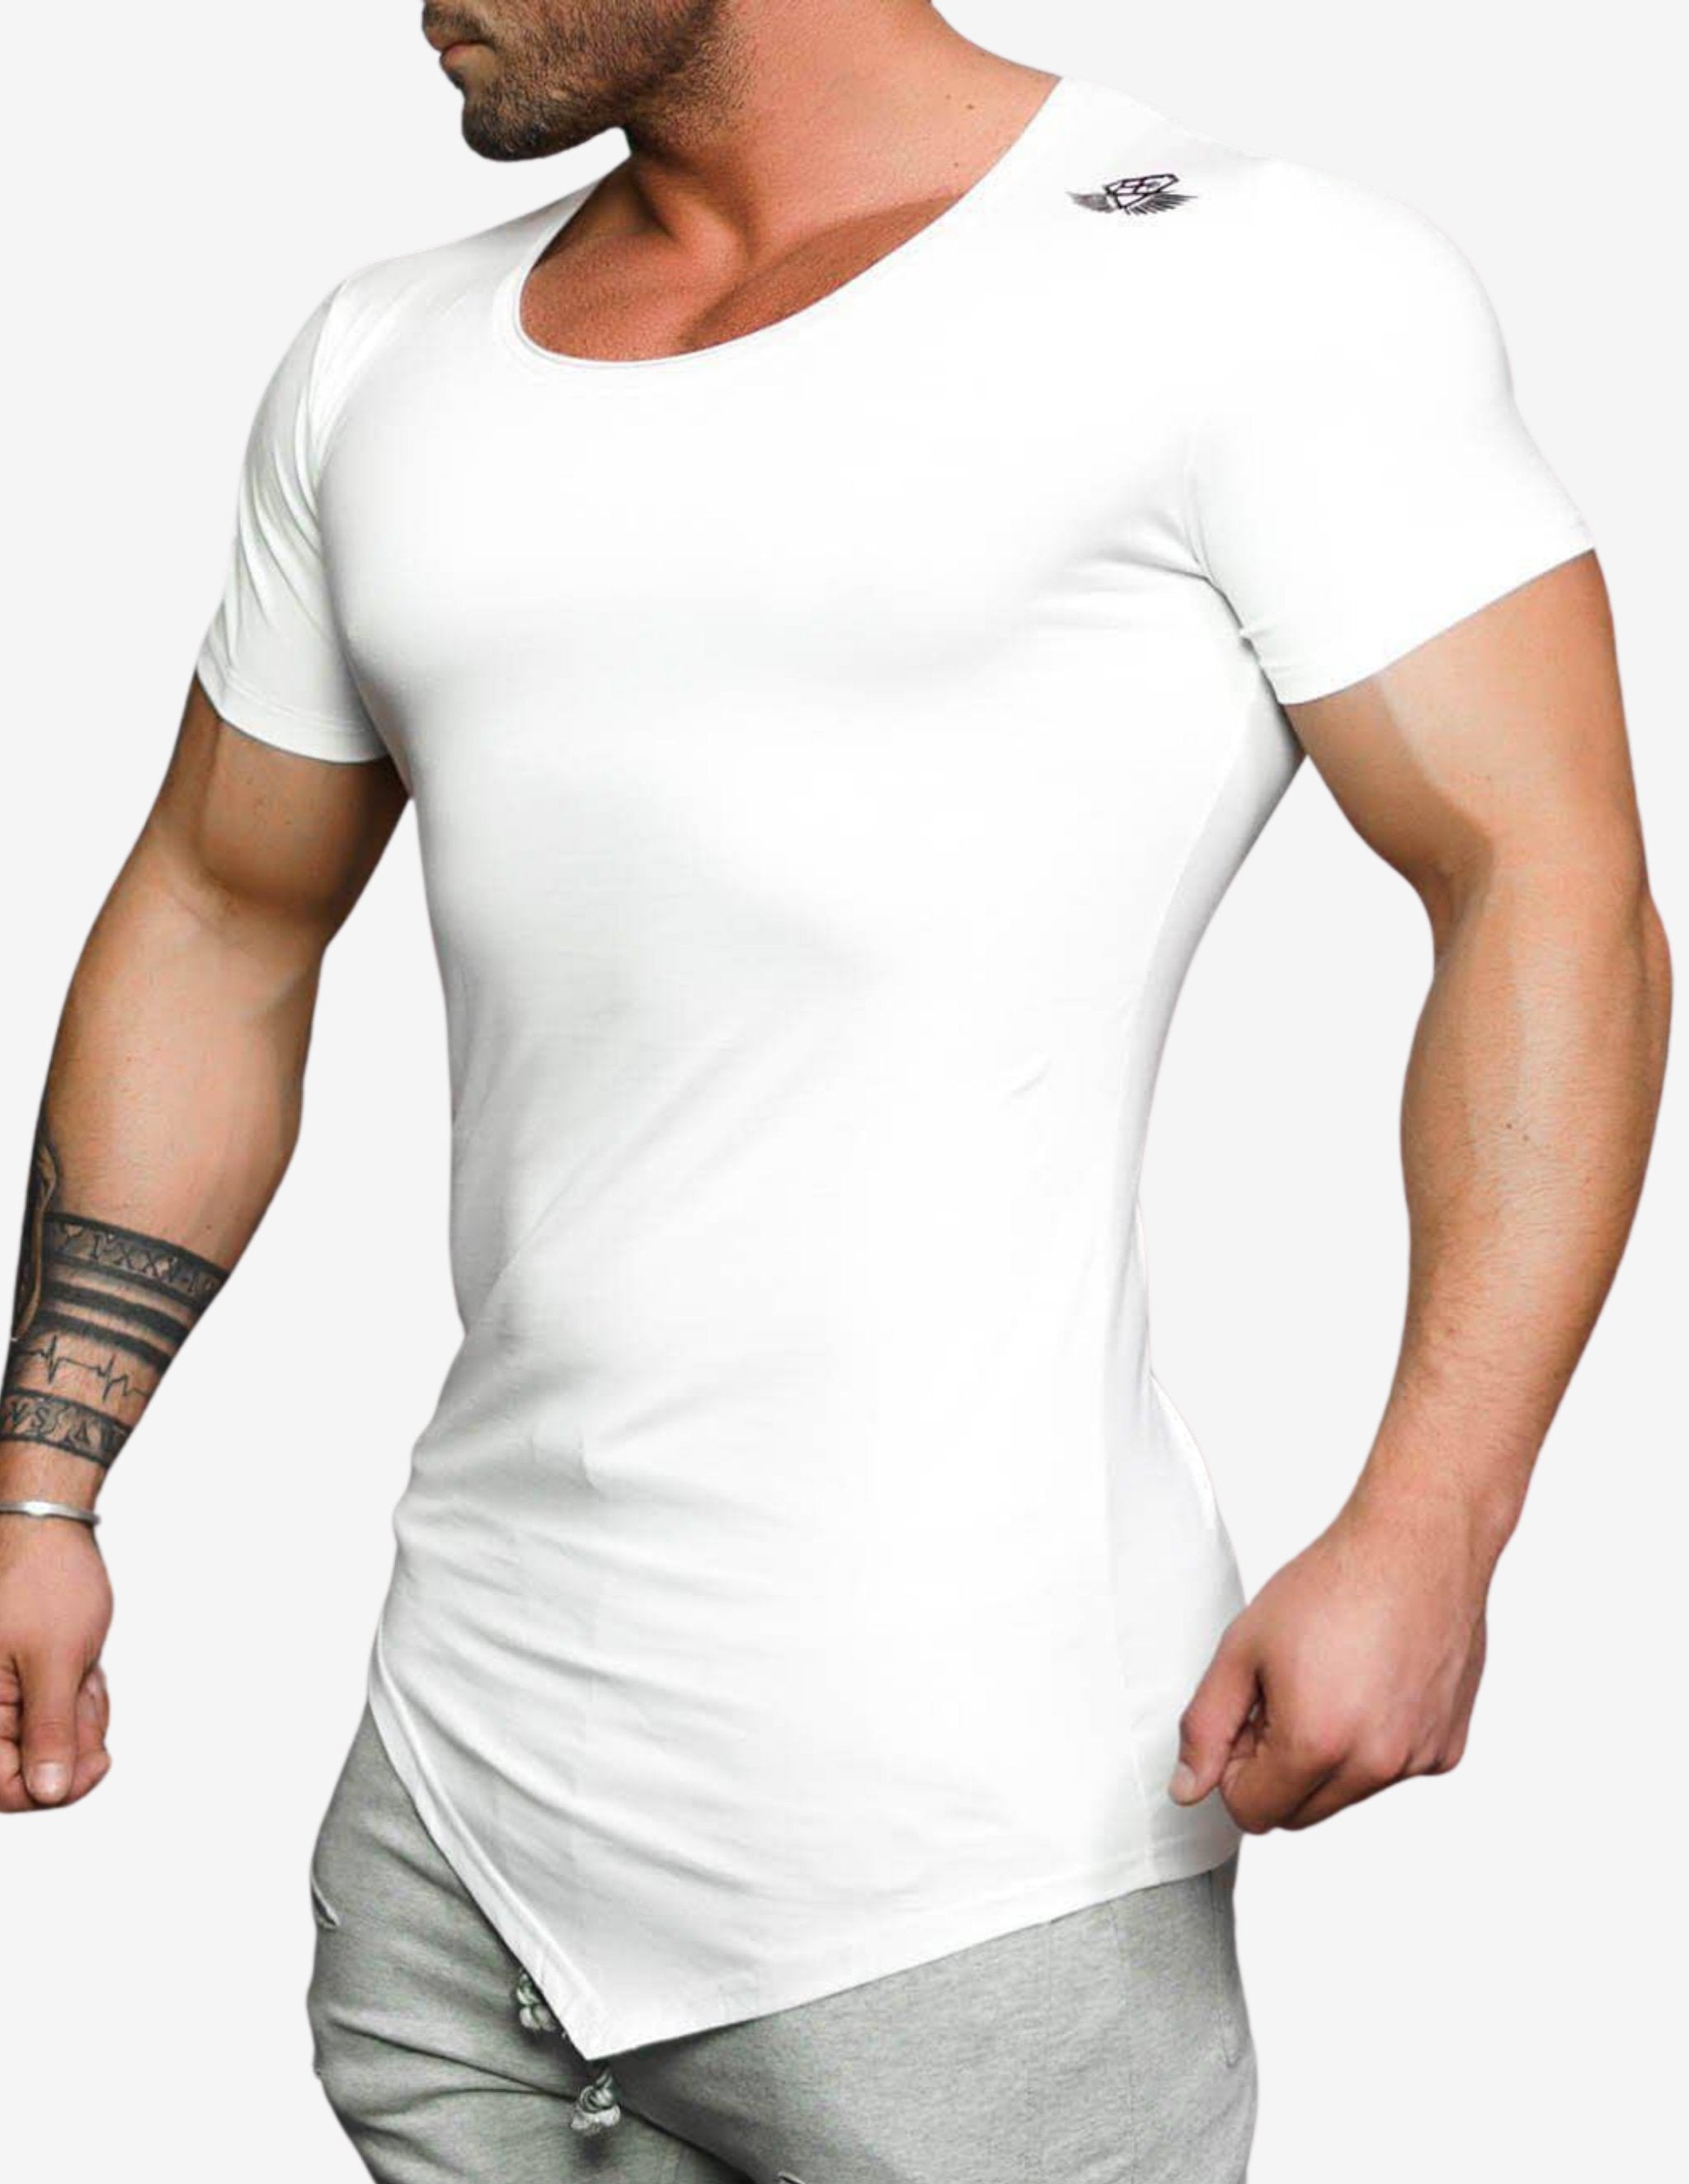 NOCTE – WHITE-T-shirt Man-Body Engineers-Guru Muscle